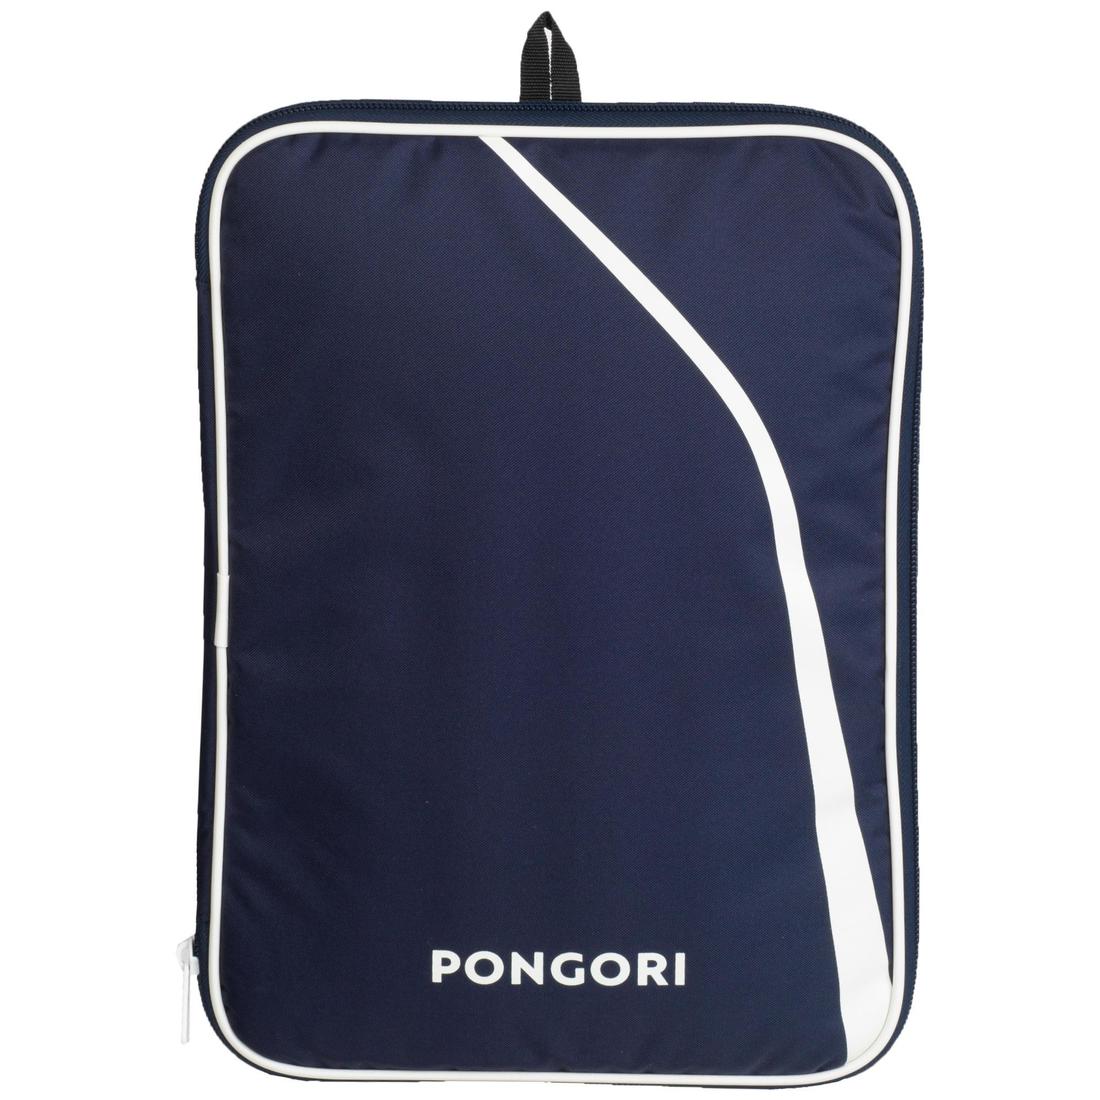 PONGORI(ポンゴリ) 卓球 ラケット 900 シェイクハンド カバー付